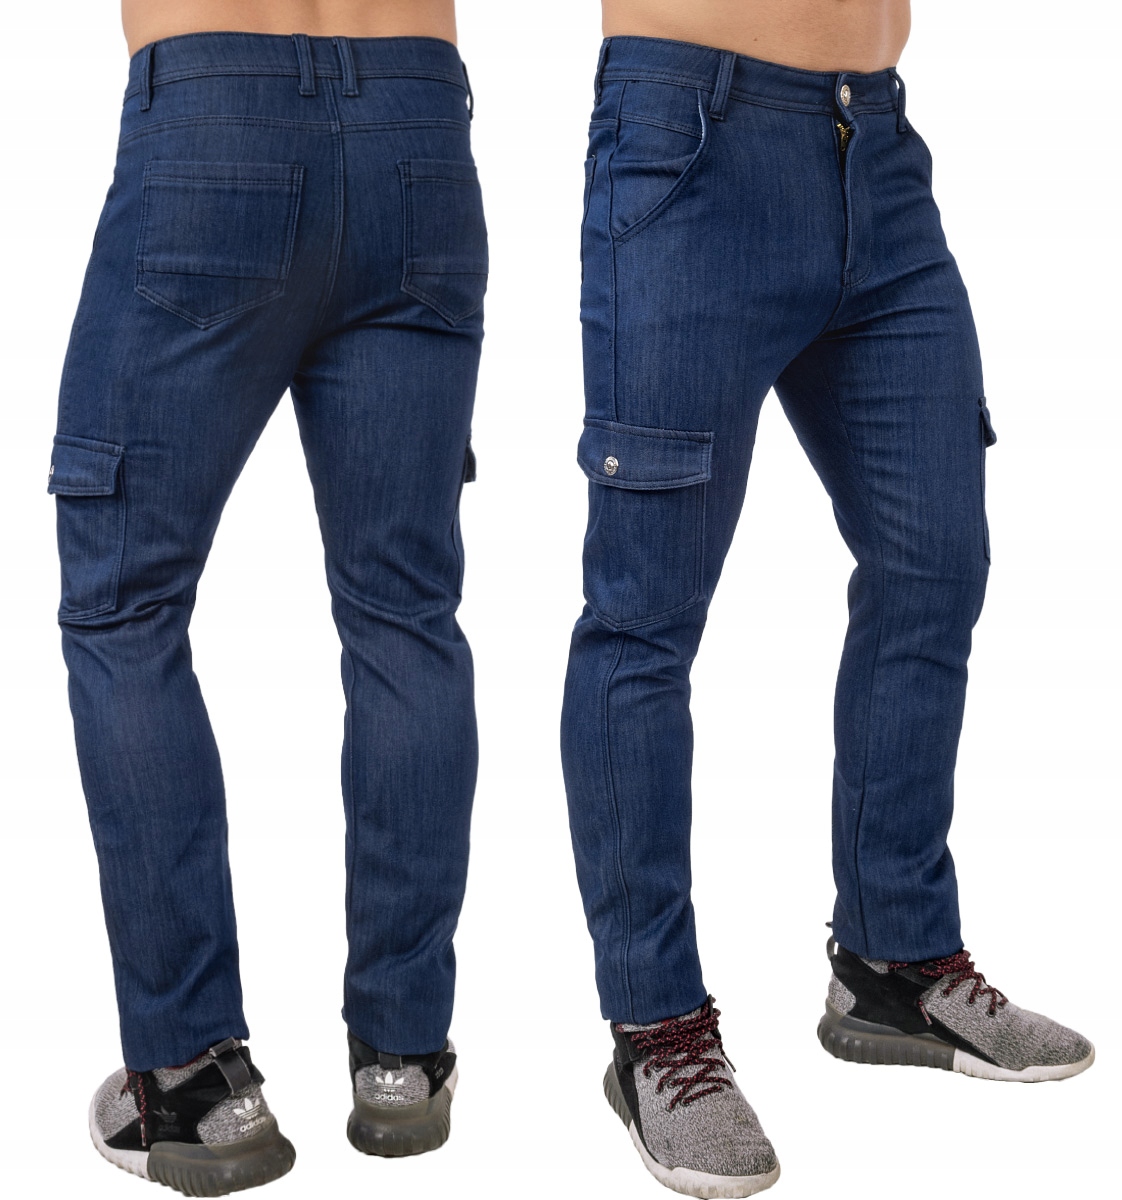 Купить джинсы теплый. Зимние джинсы мужские. Джинсы брюки мужские. Утеплённые джинсы мужские. Джинсовые брюки мужские.